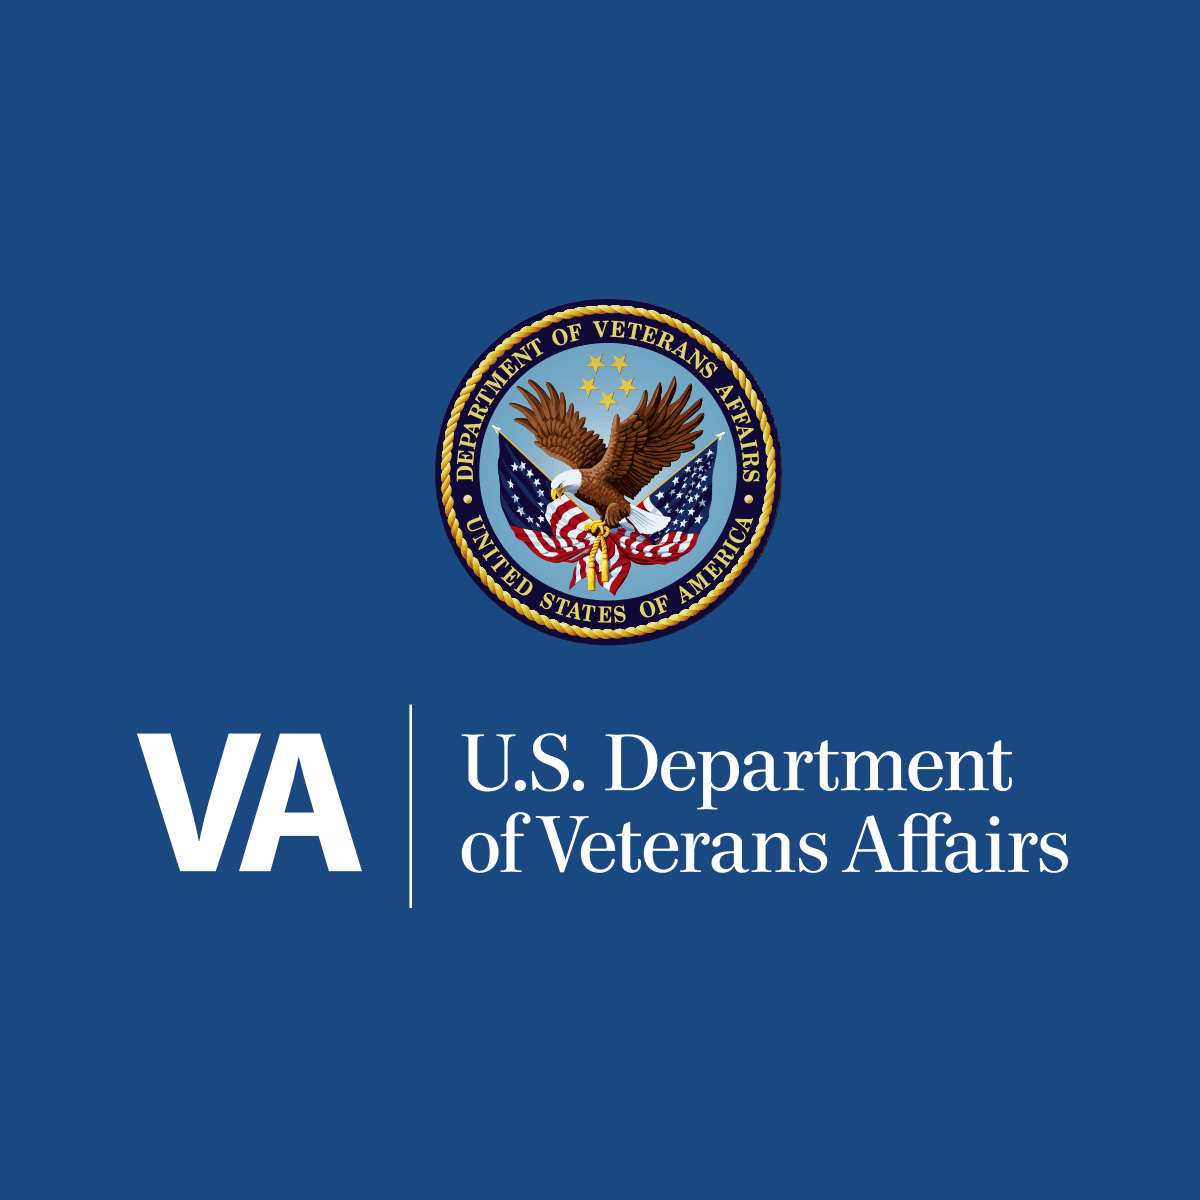 VA.gov | Veterans Affairs